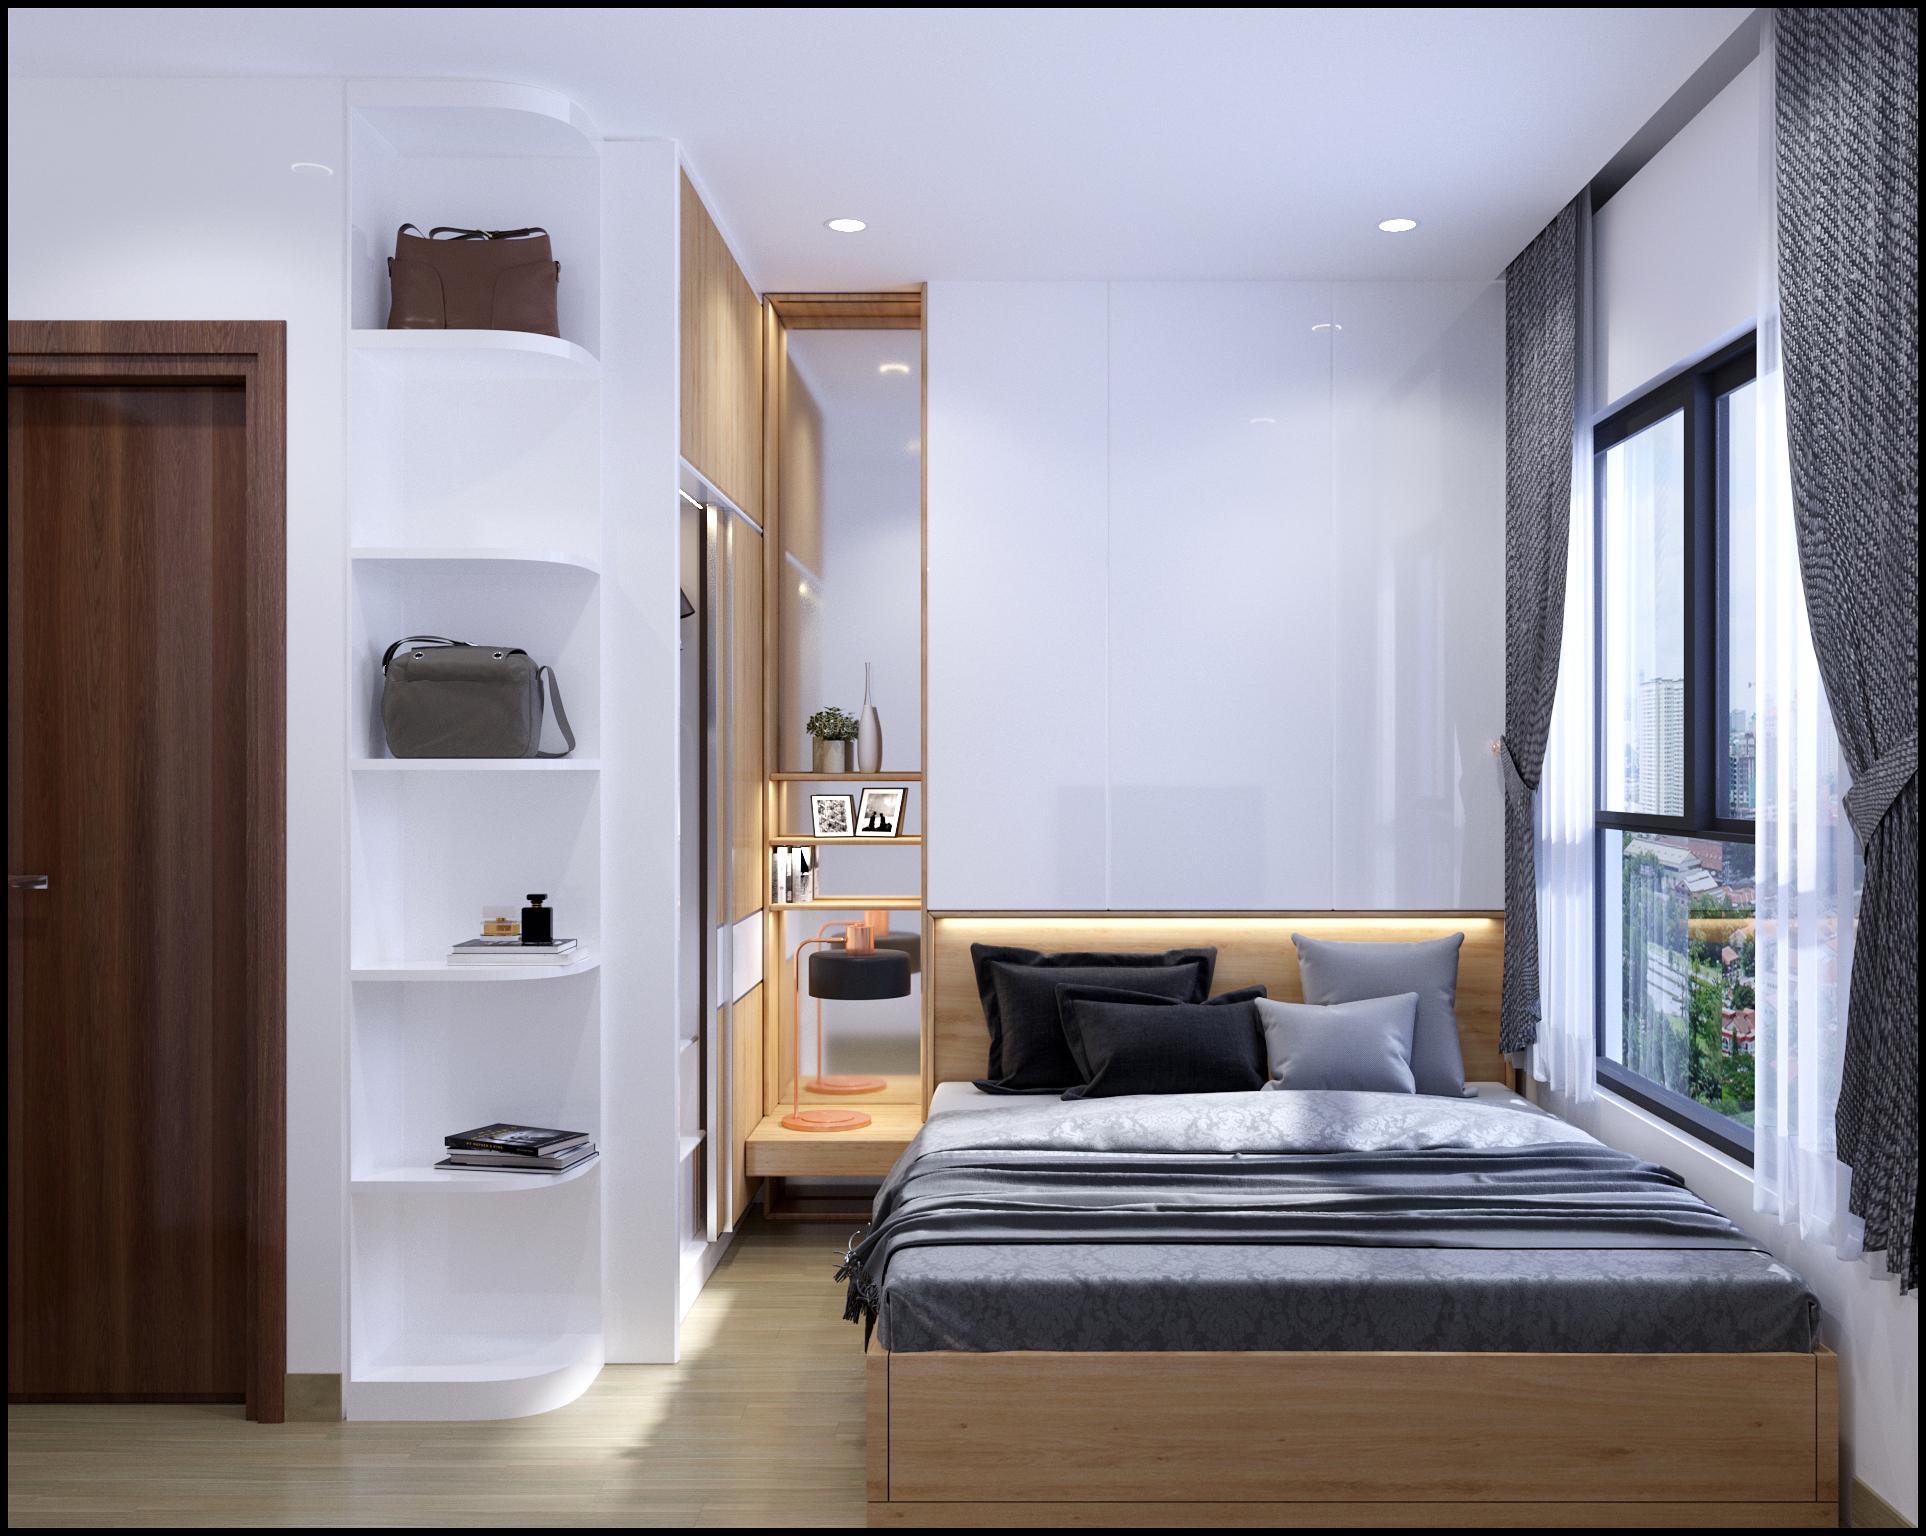 Thiết kế nhà mẫu phòng ngủ căn hộ Bcons Green View